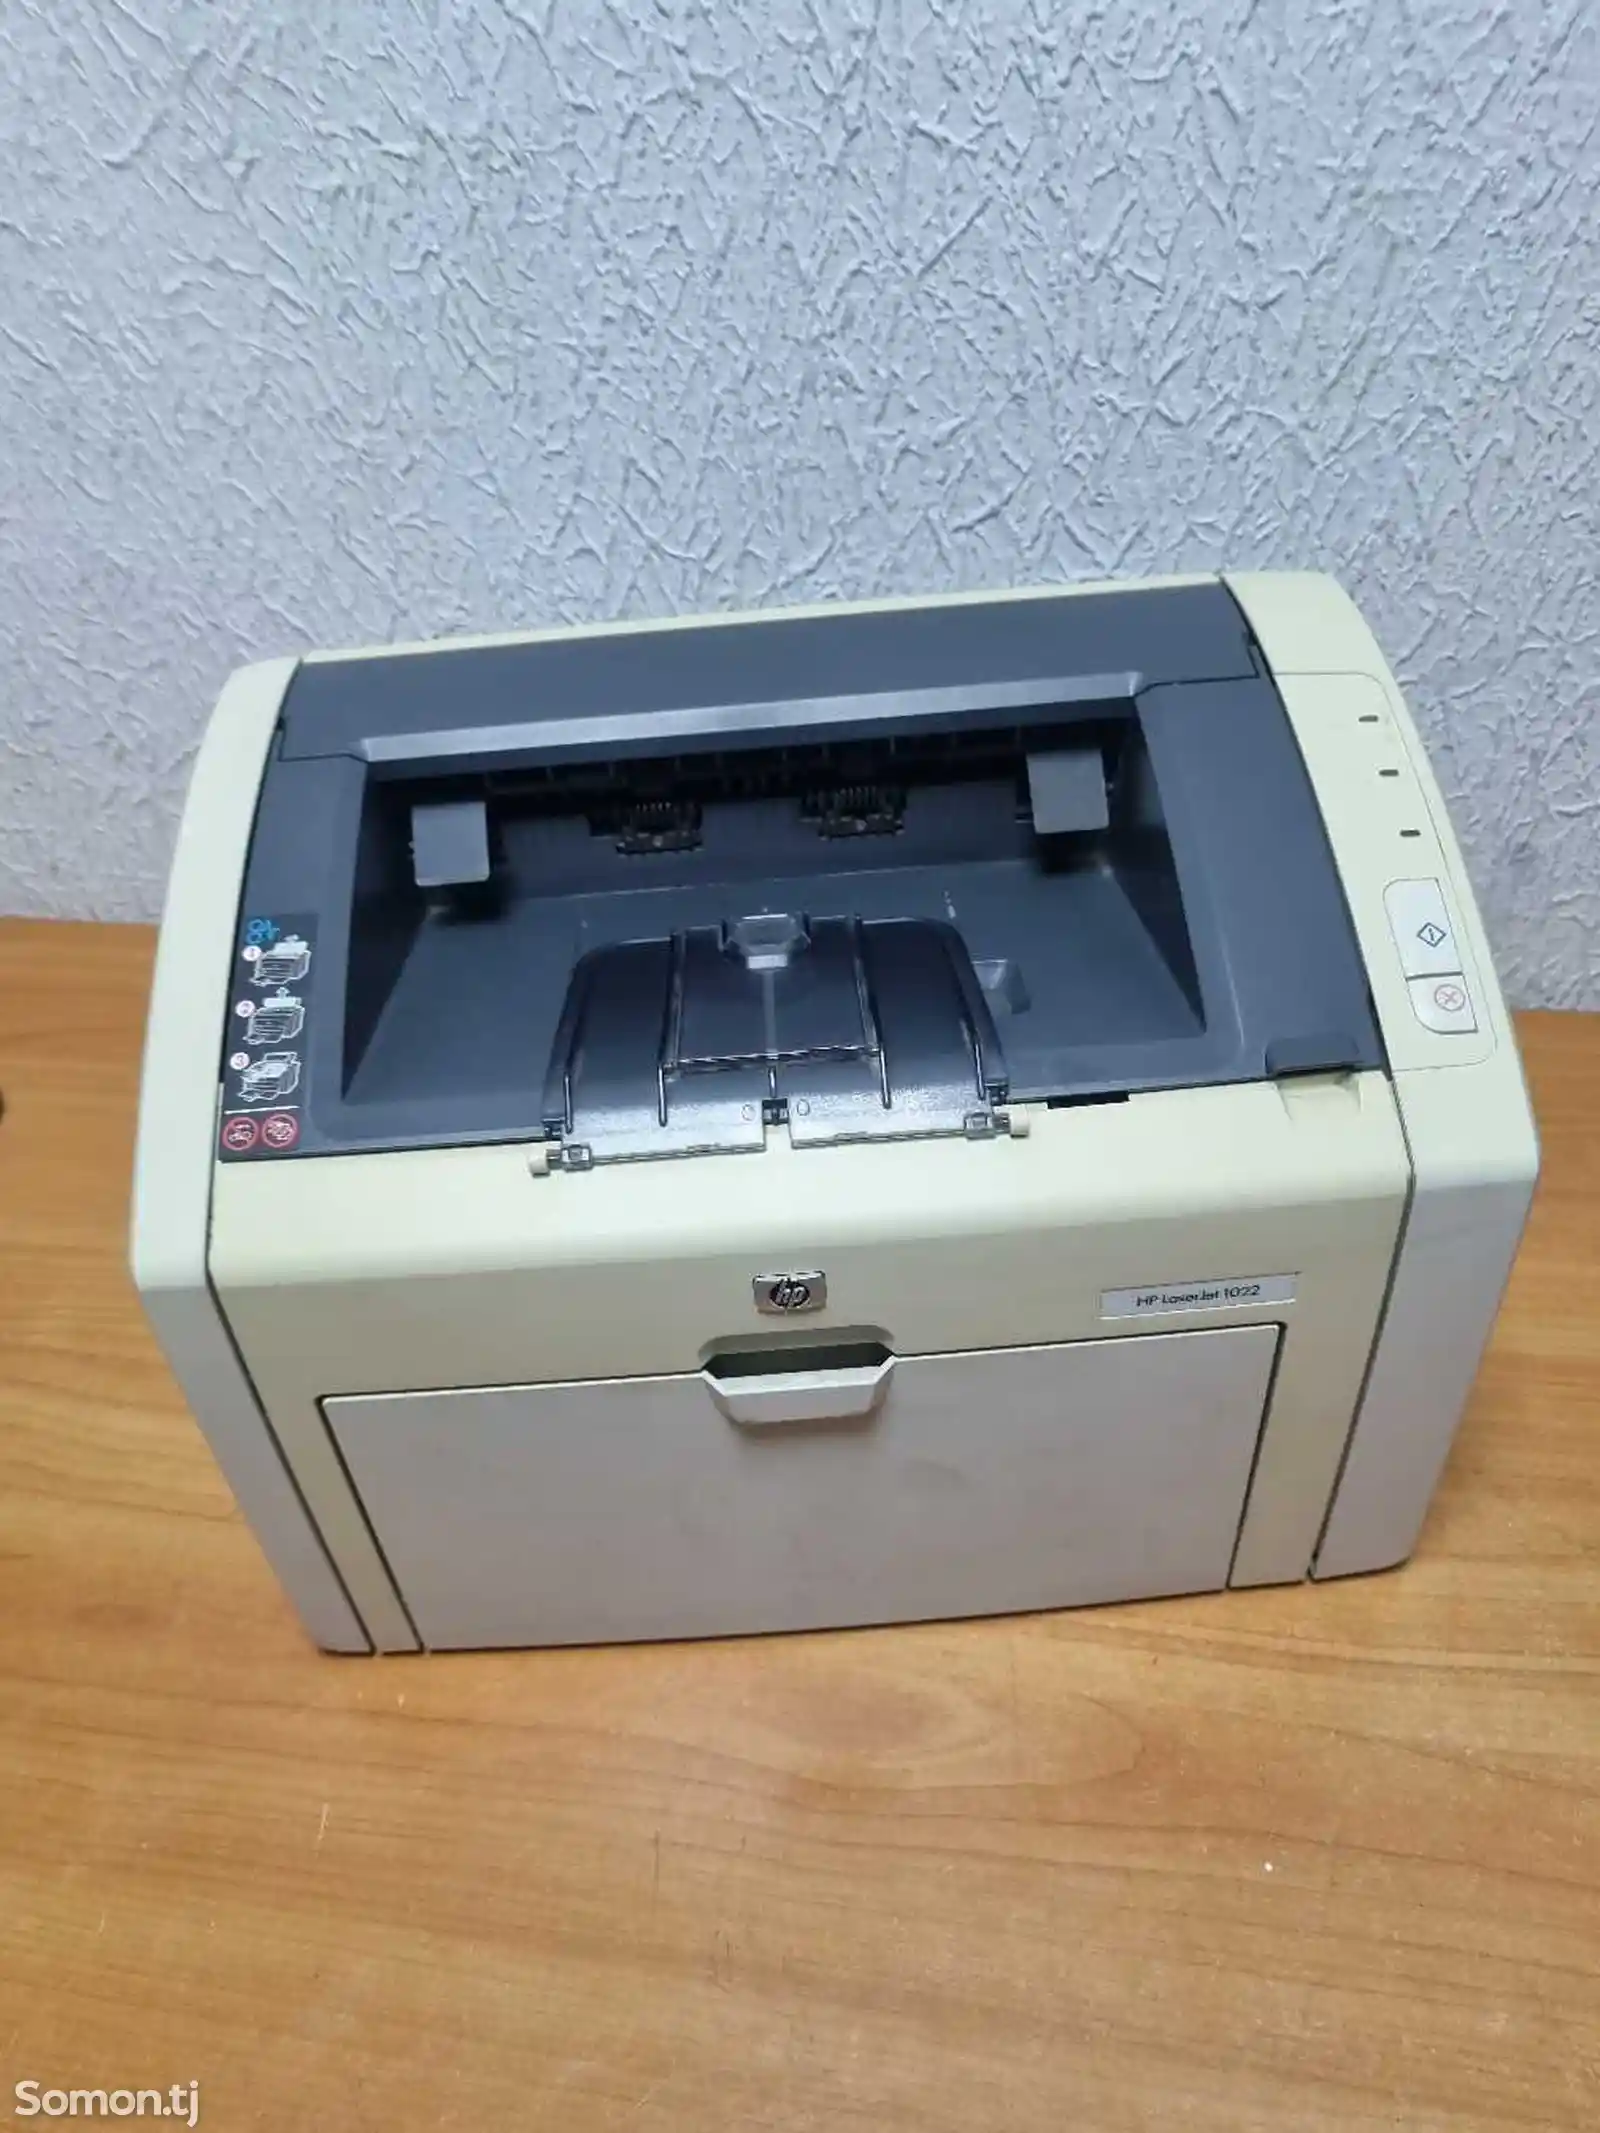 Принтер одиночный hp 1007-1